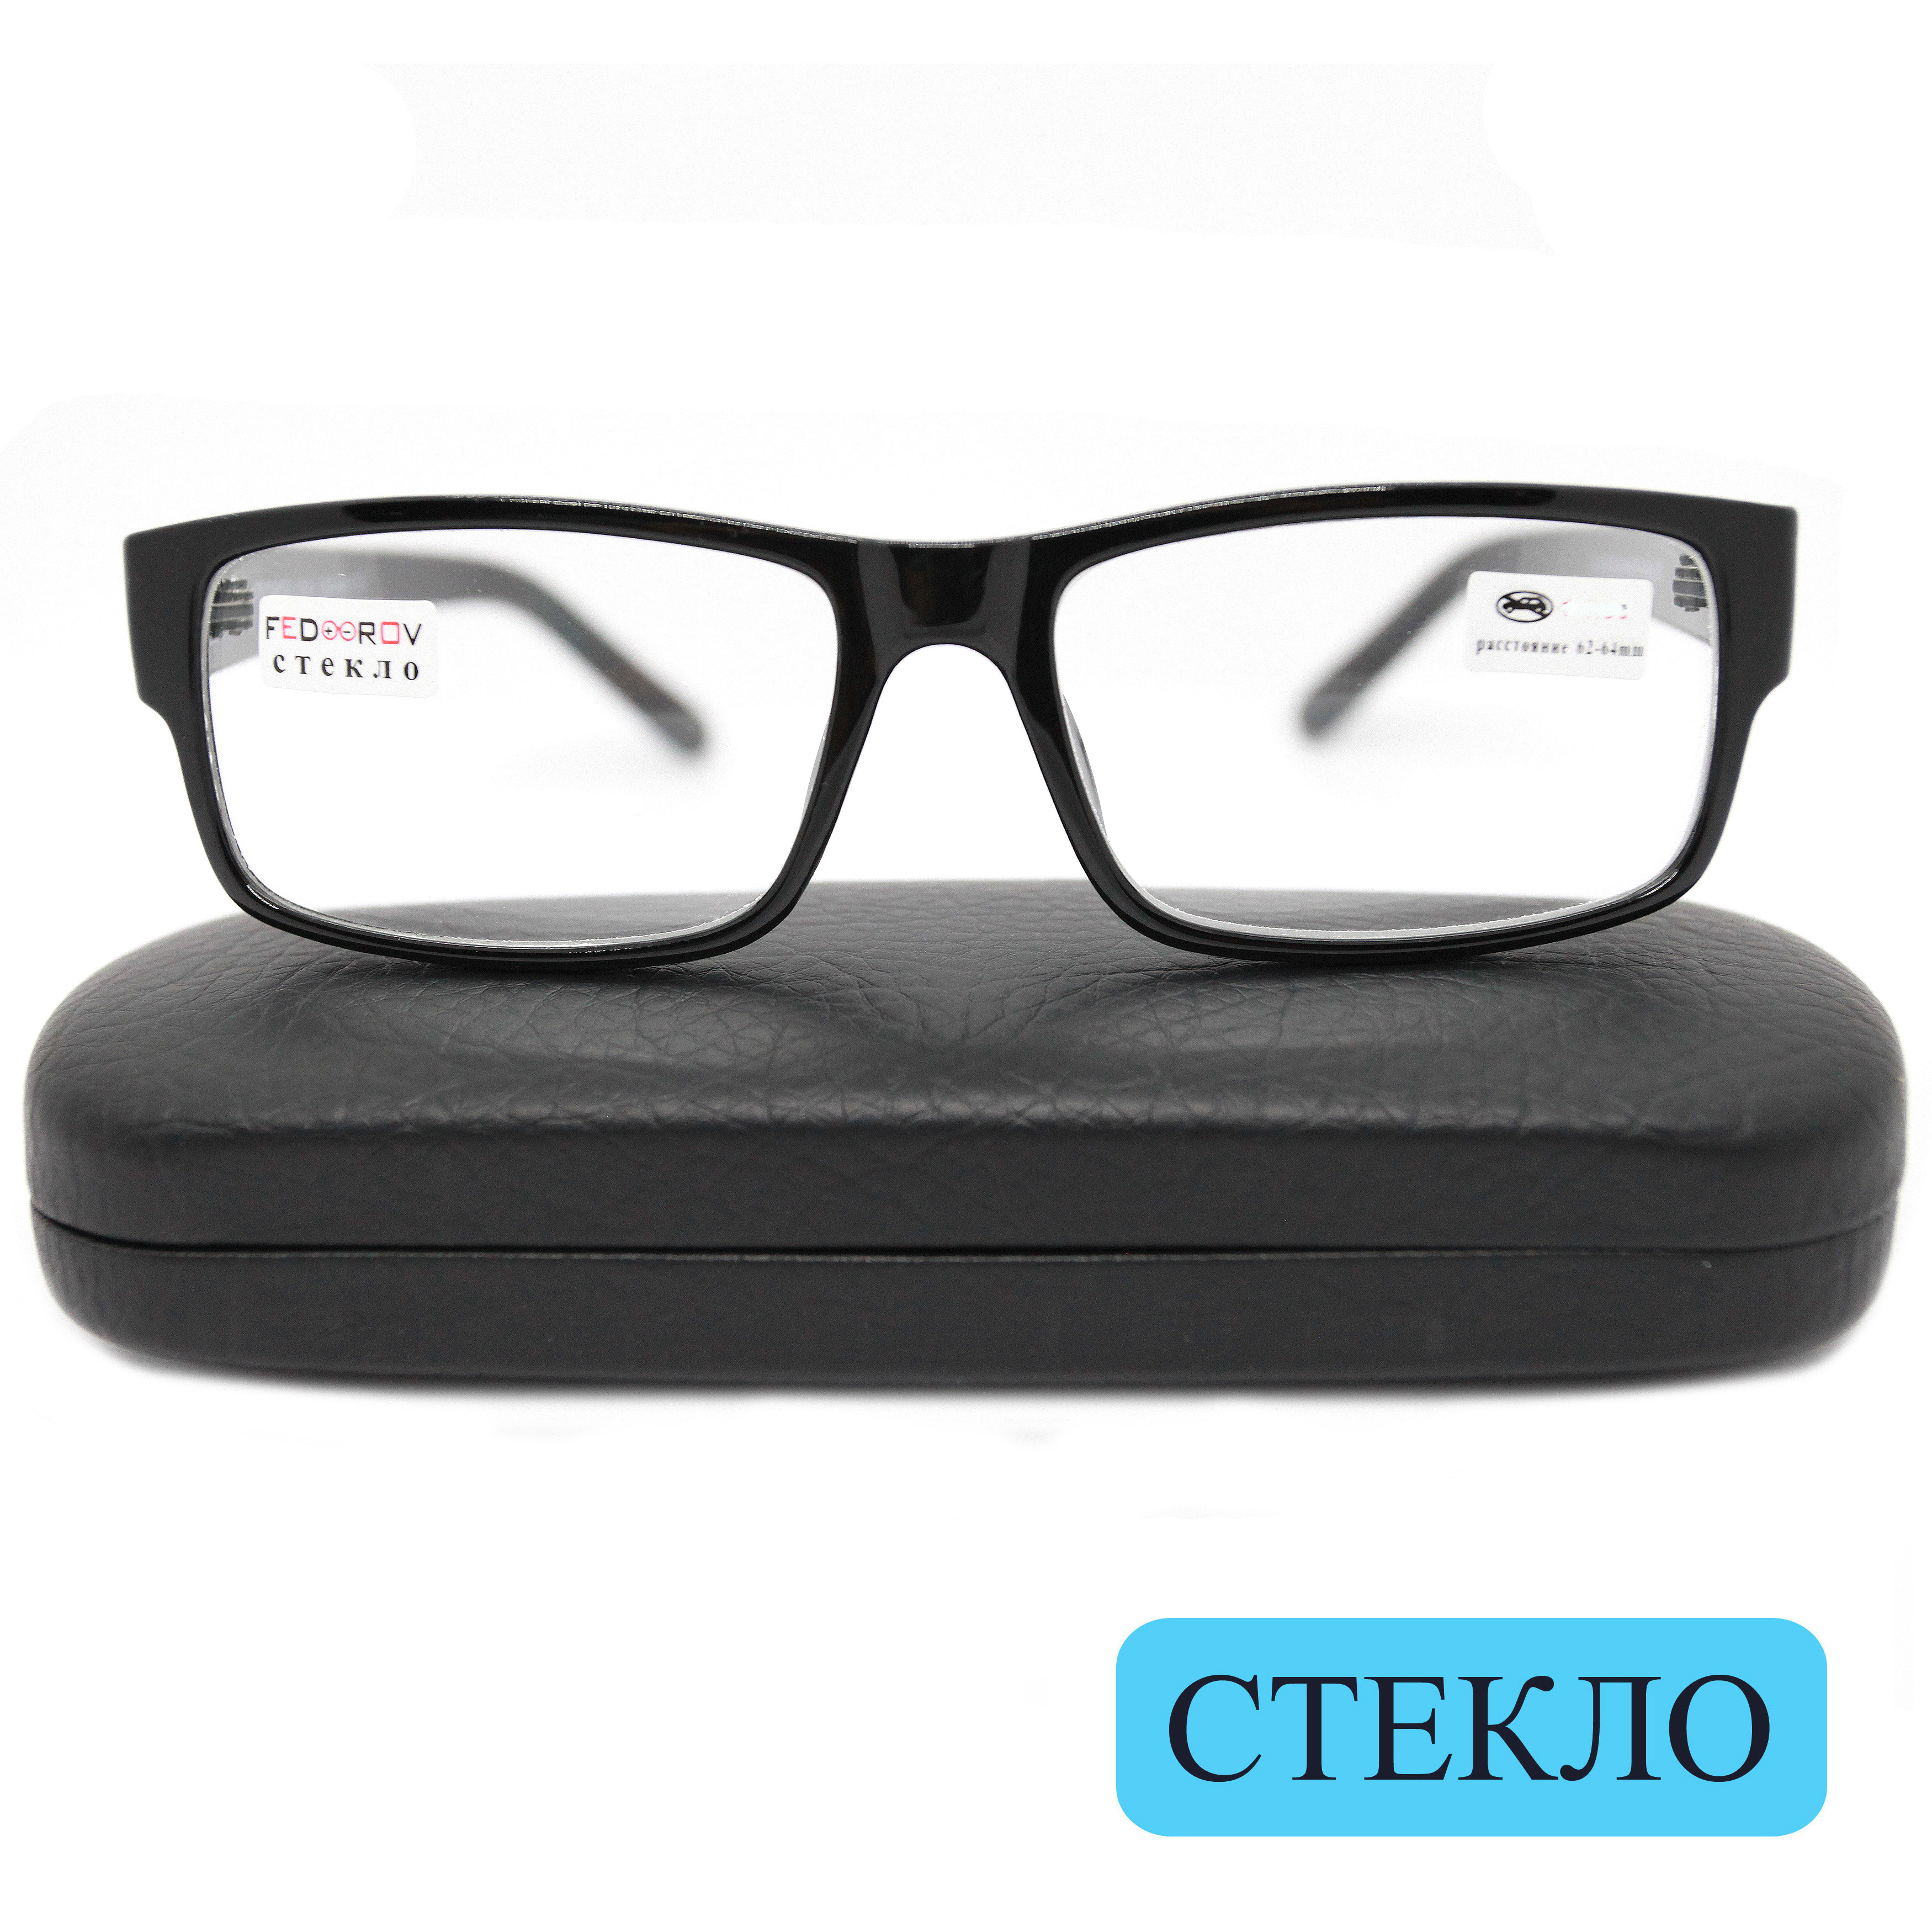 Готовые очки Fedrov 2722, со стеклянной линзой, +0,50, c футляром, черный, РЦ 62-64